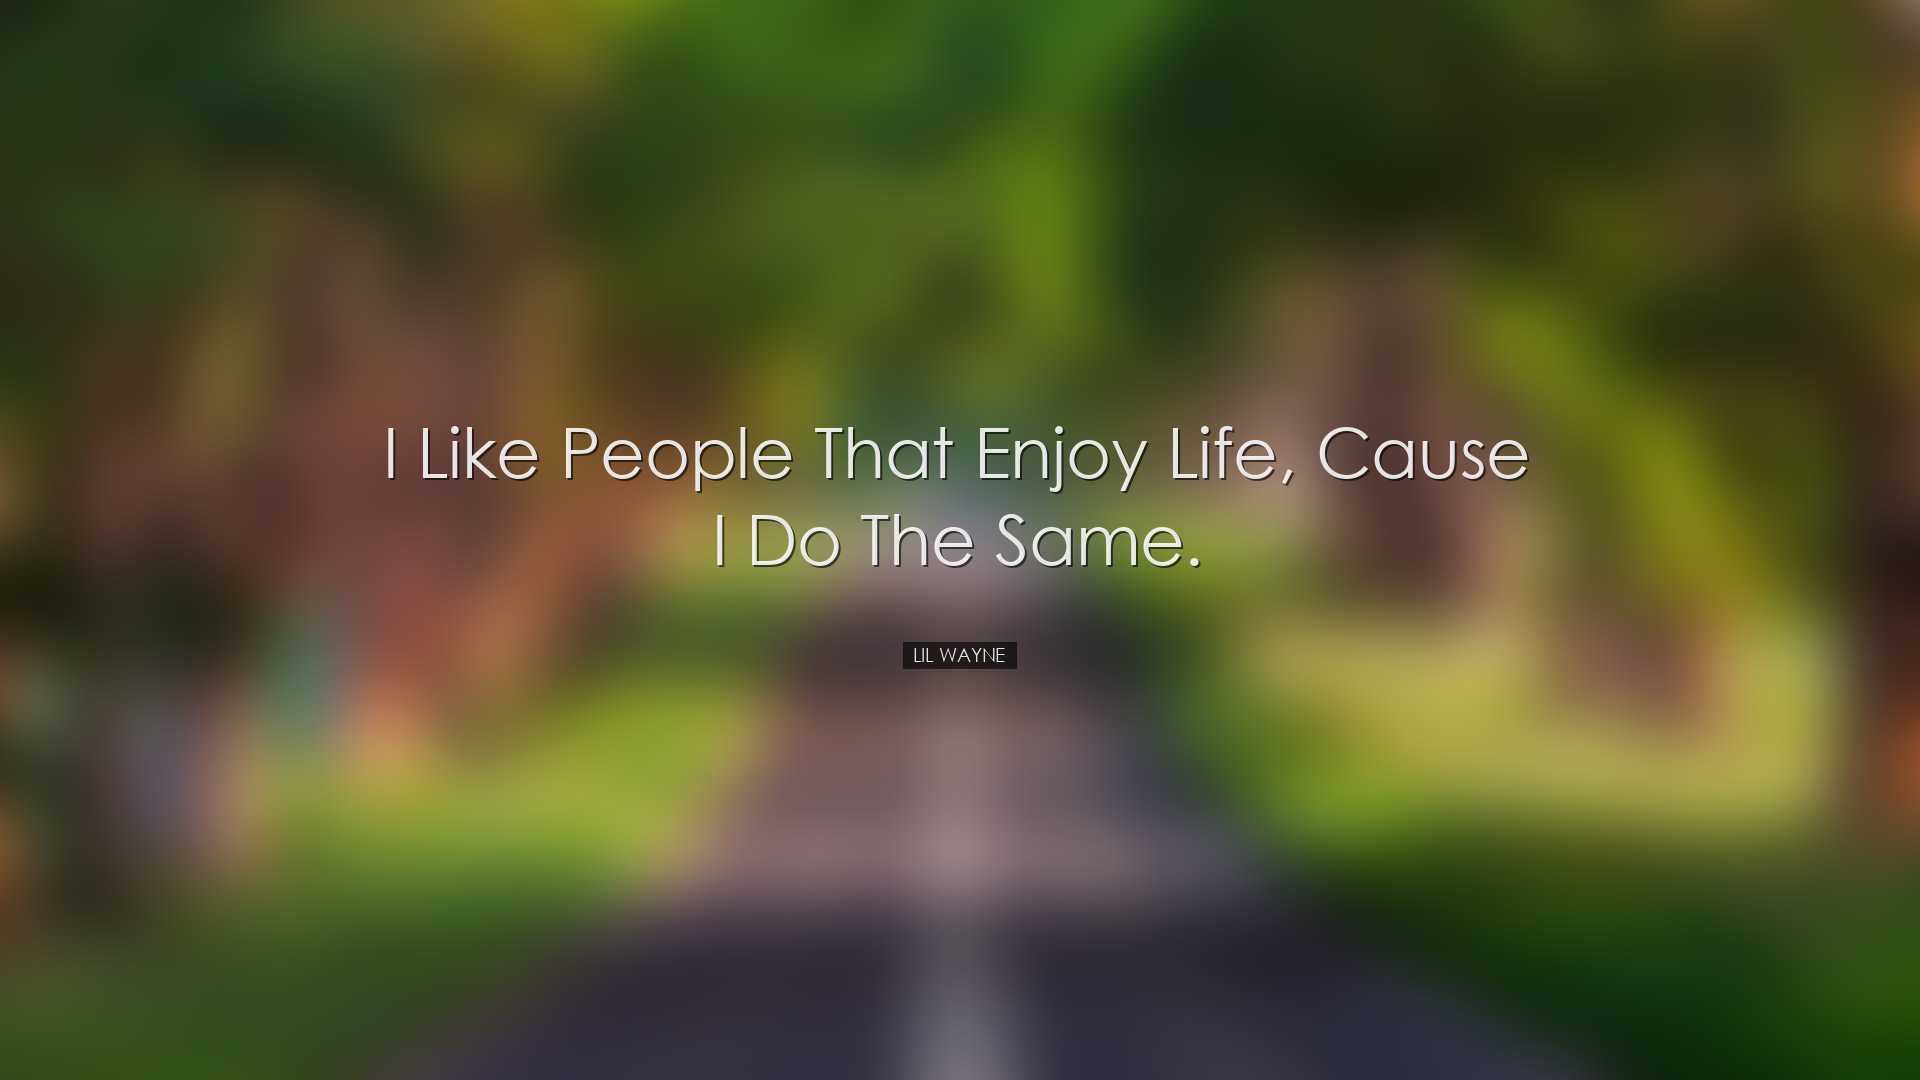 I like people that enjoy life, cause I do the same. - Lil Wayne